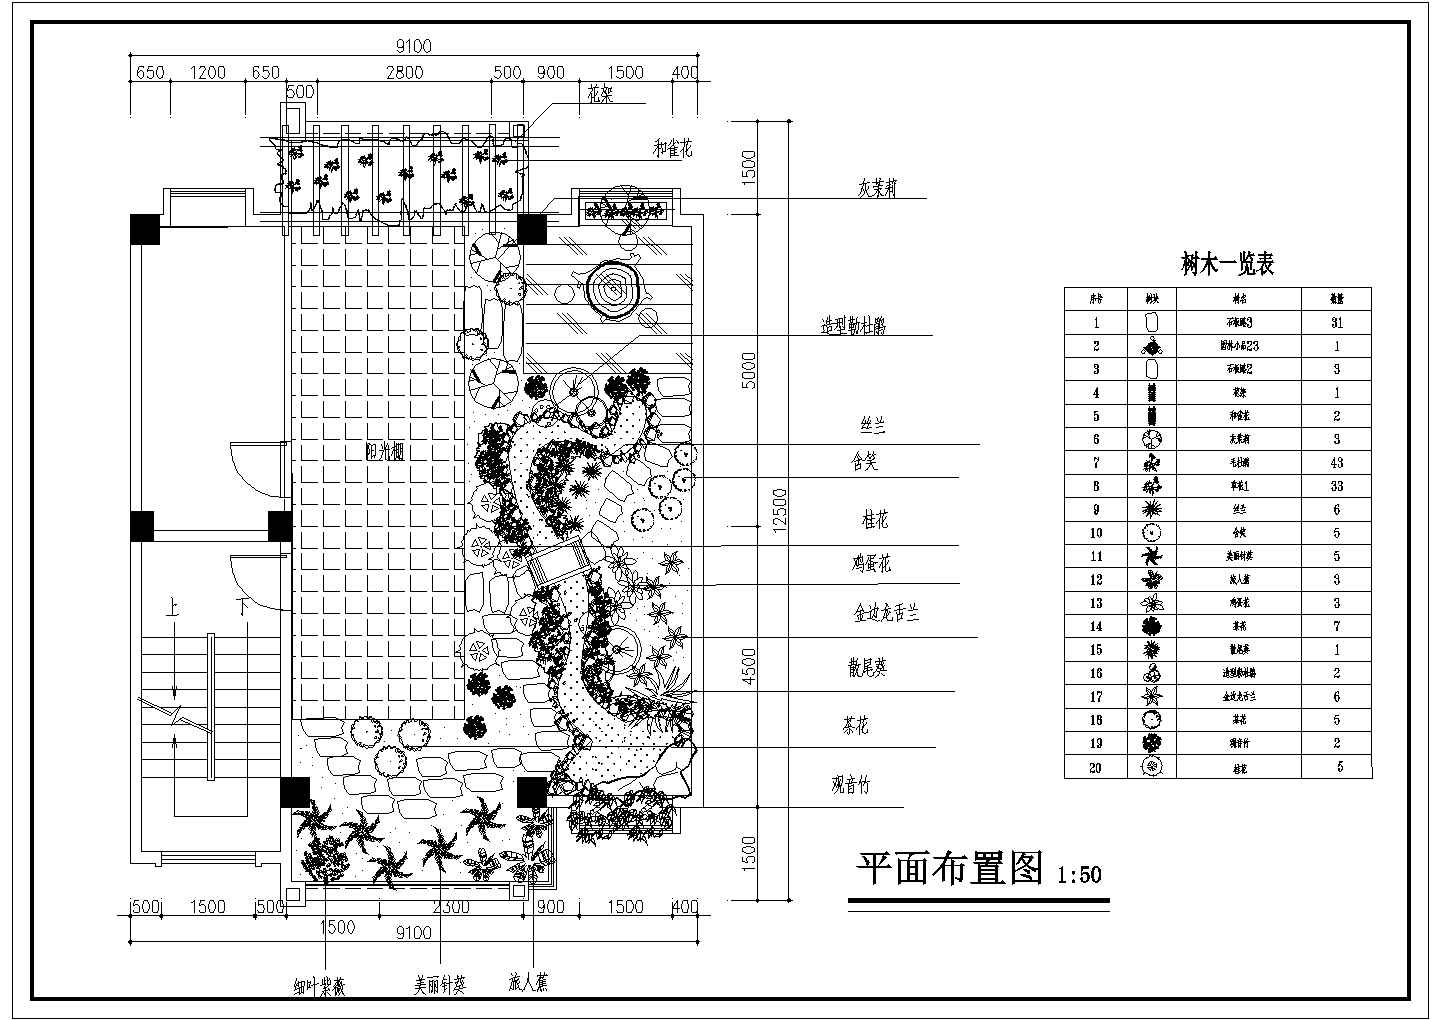 西安市灞桥区金源大厦商业中心屋顶景观花园平面设计CAD图纸